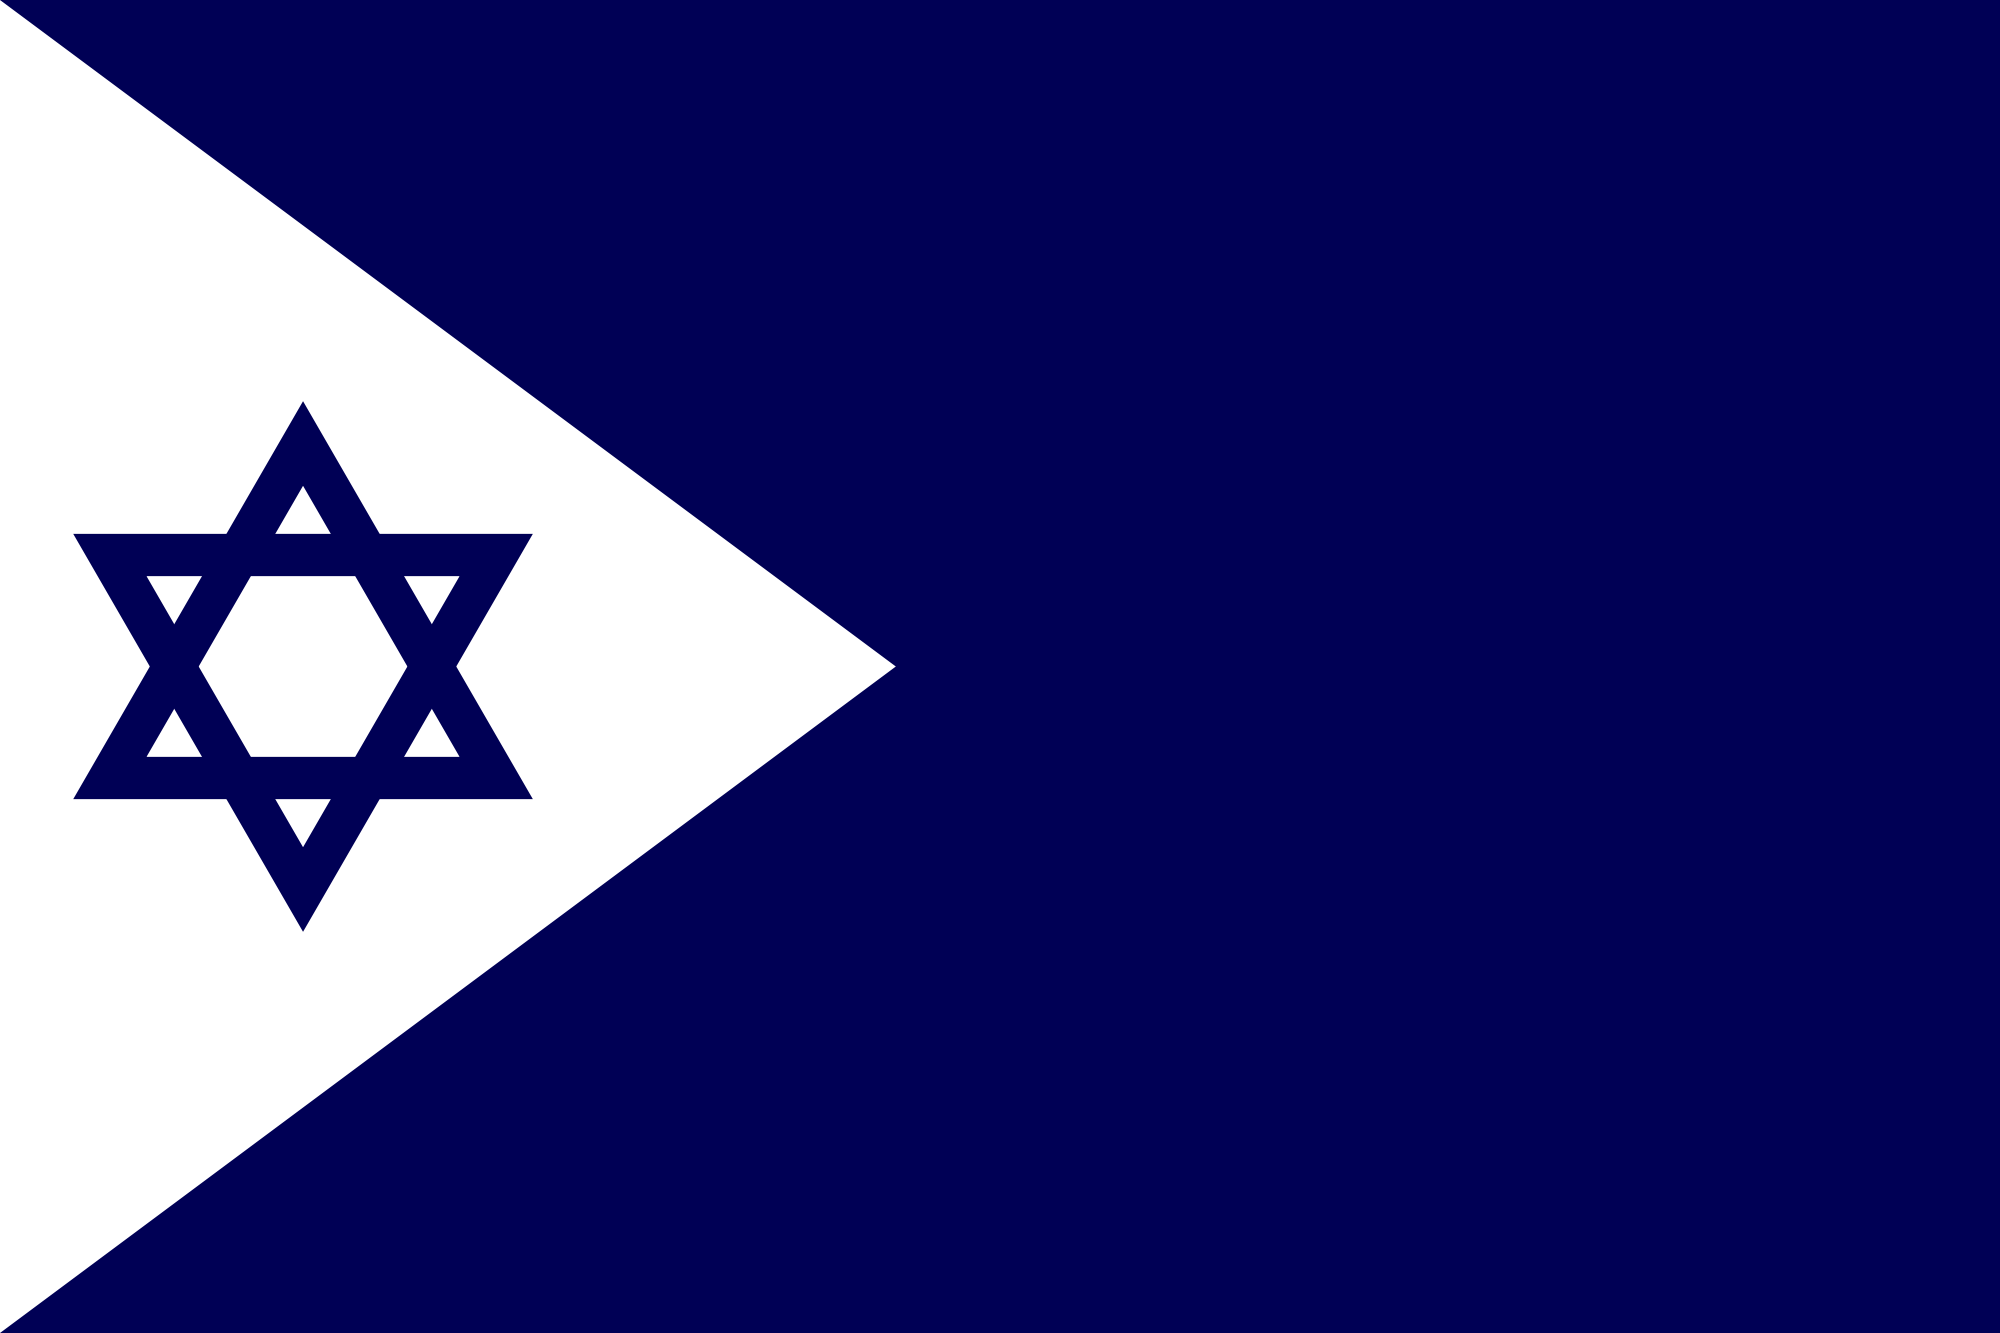 Israel (Naval ensign)